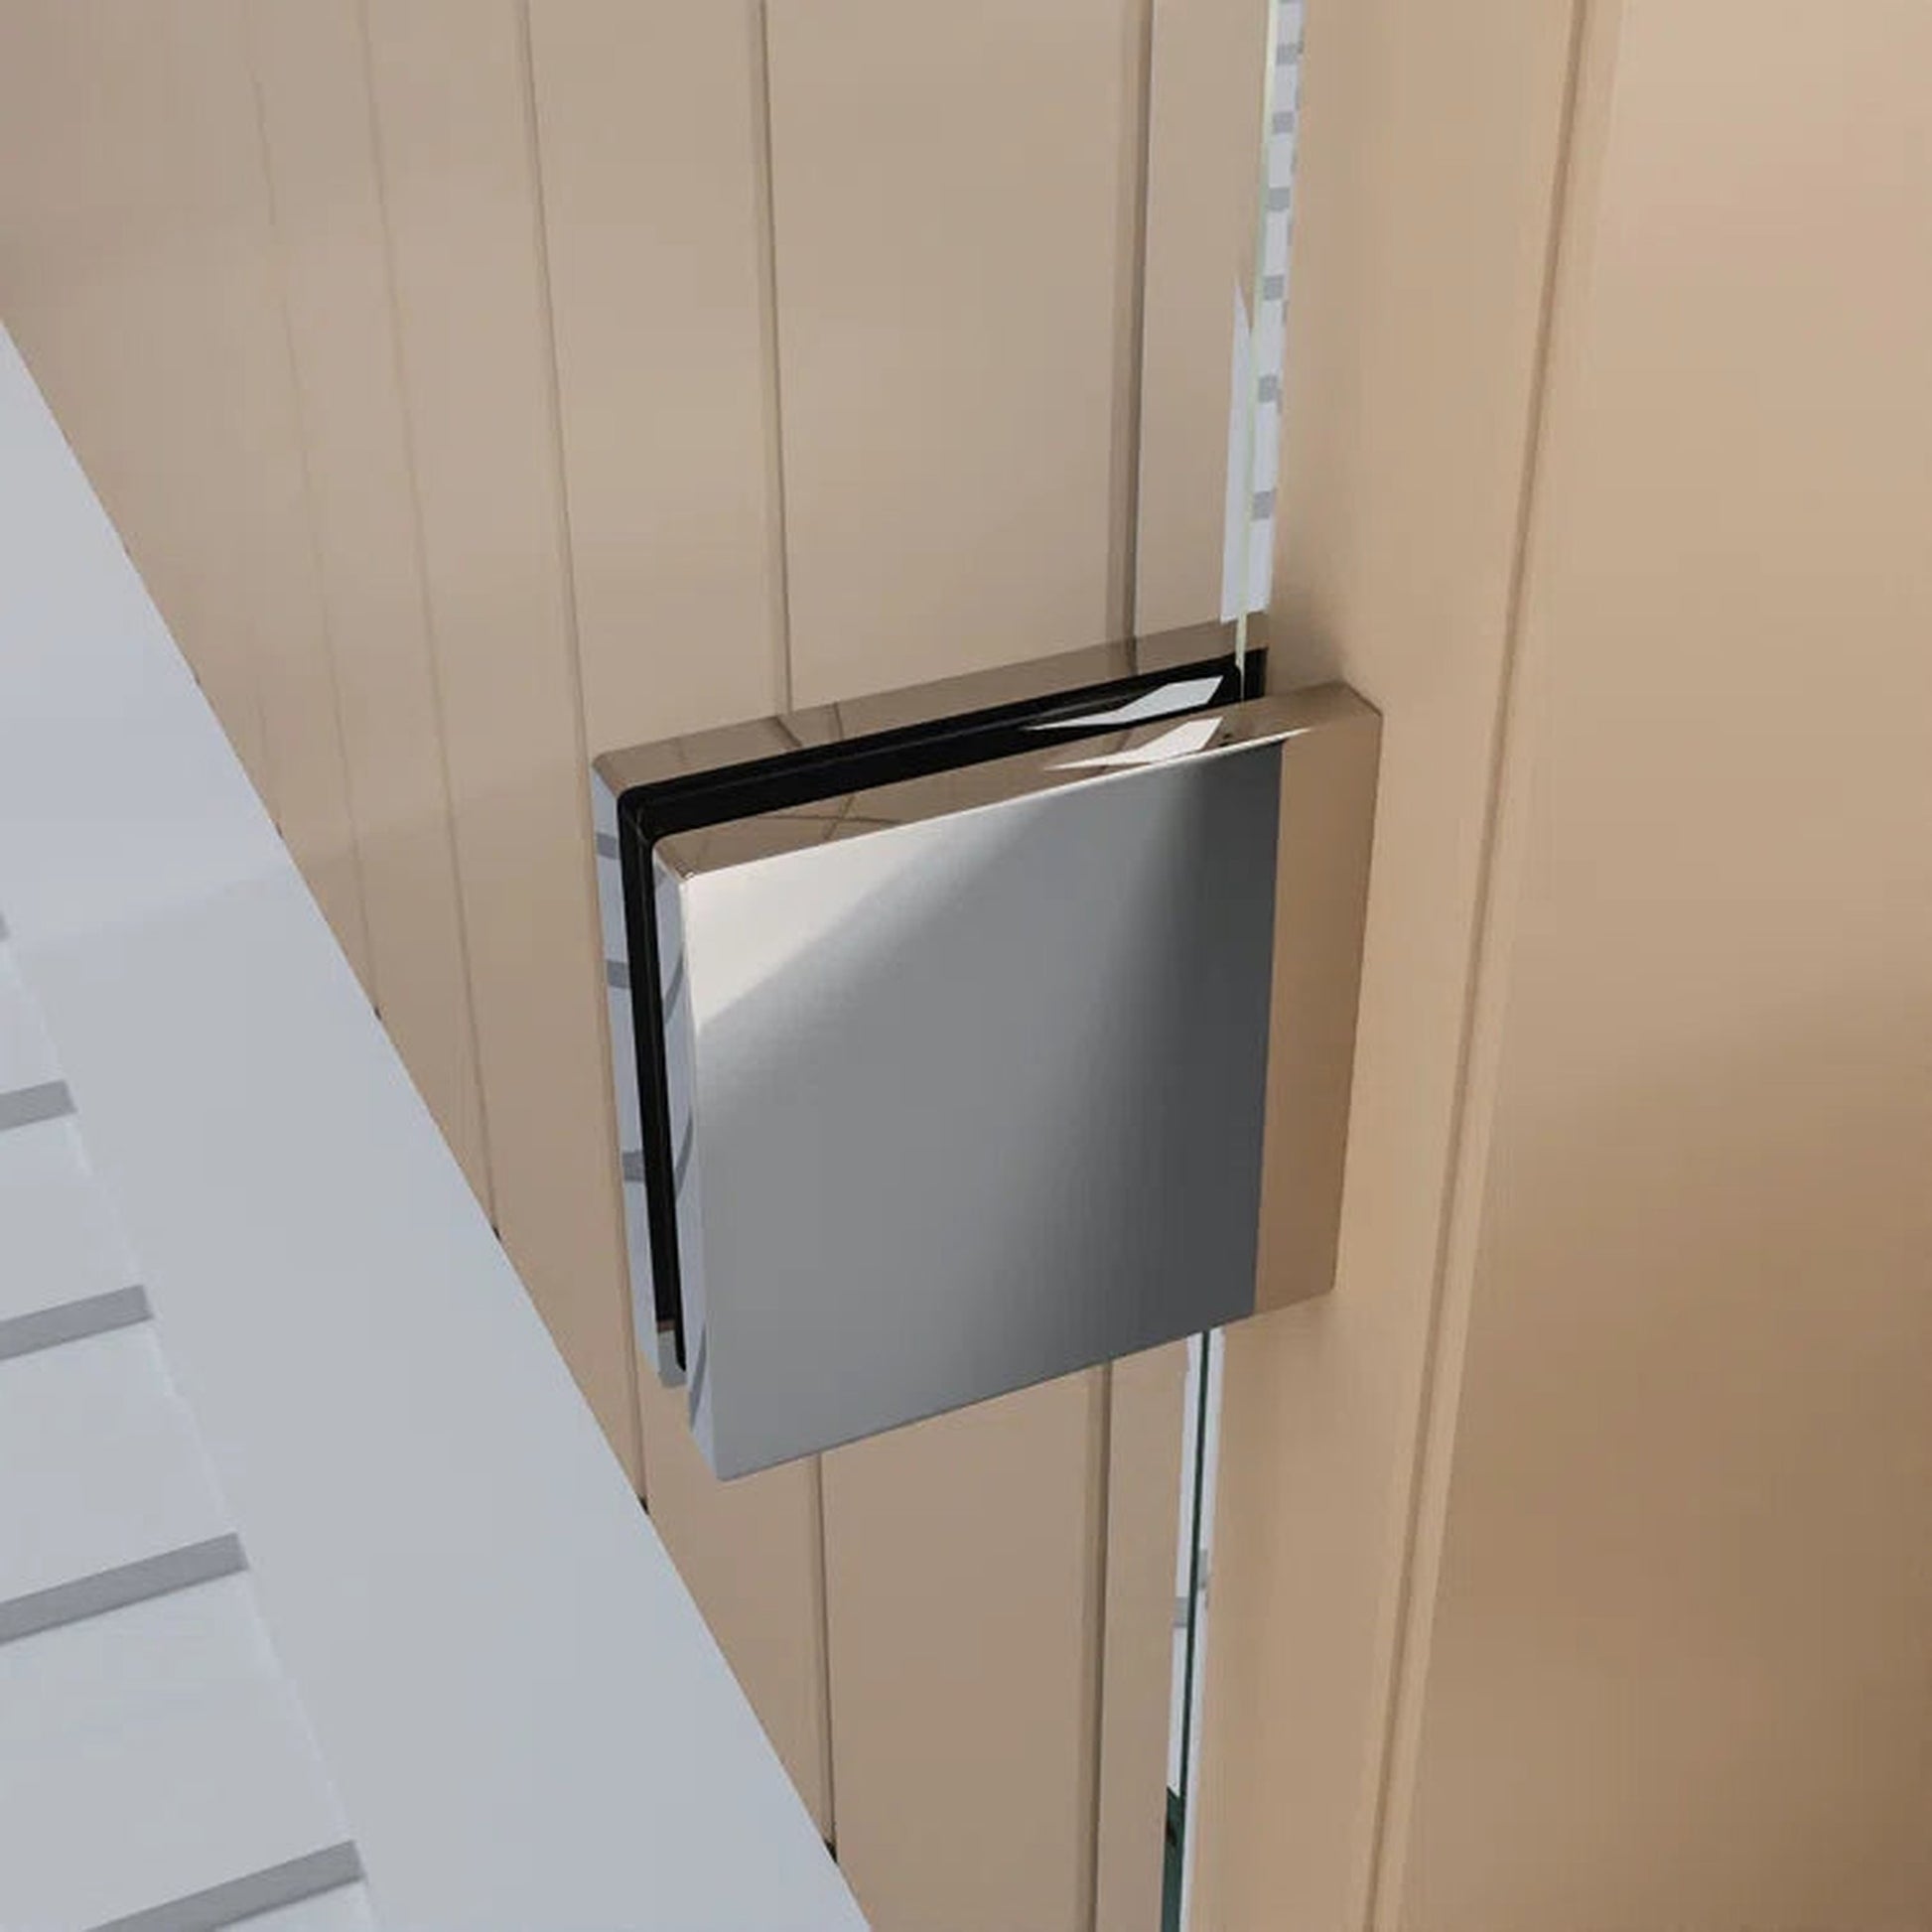 DeerValley Concord 56" Rectangular Single Sliding Frameless Shower Door With Chrome Hardware